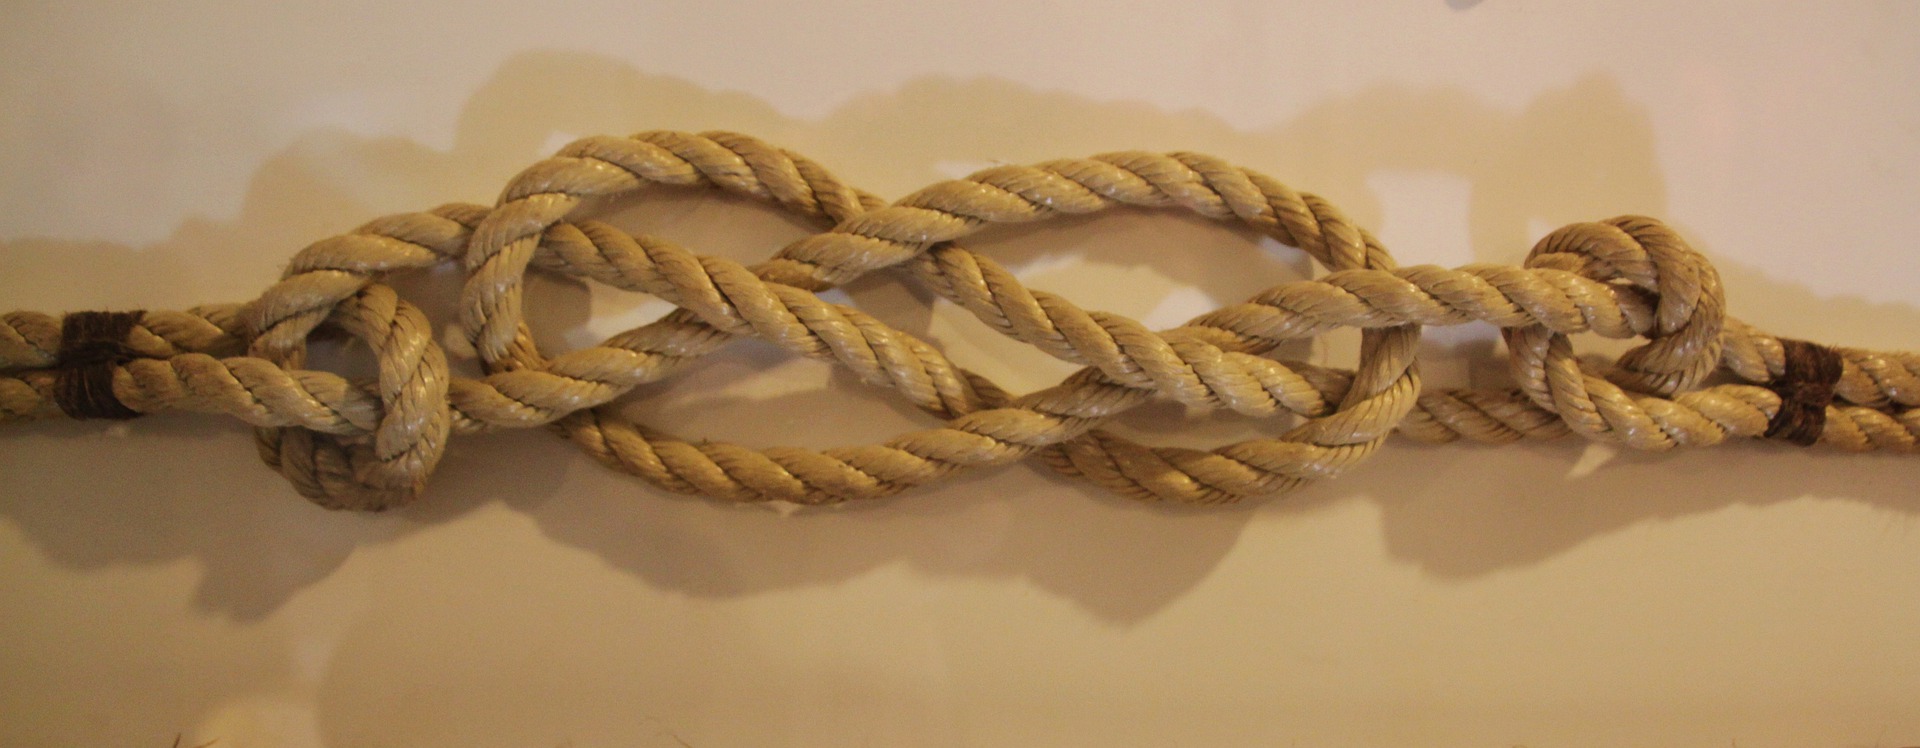 sailors knot 326567 1920